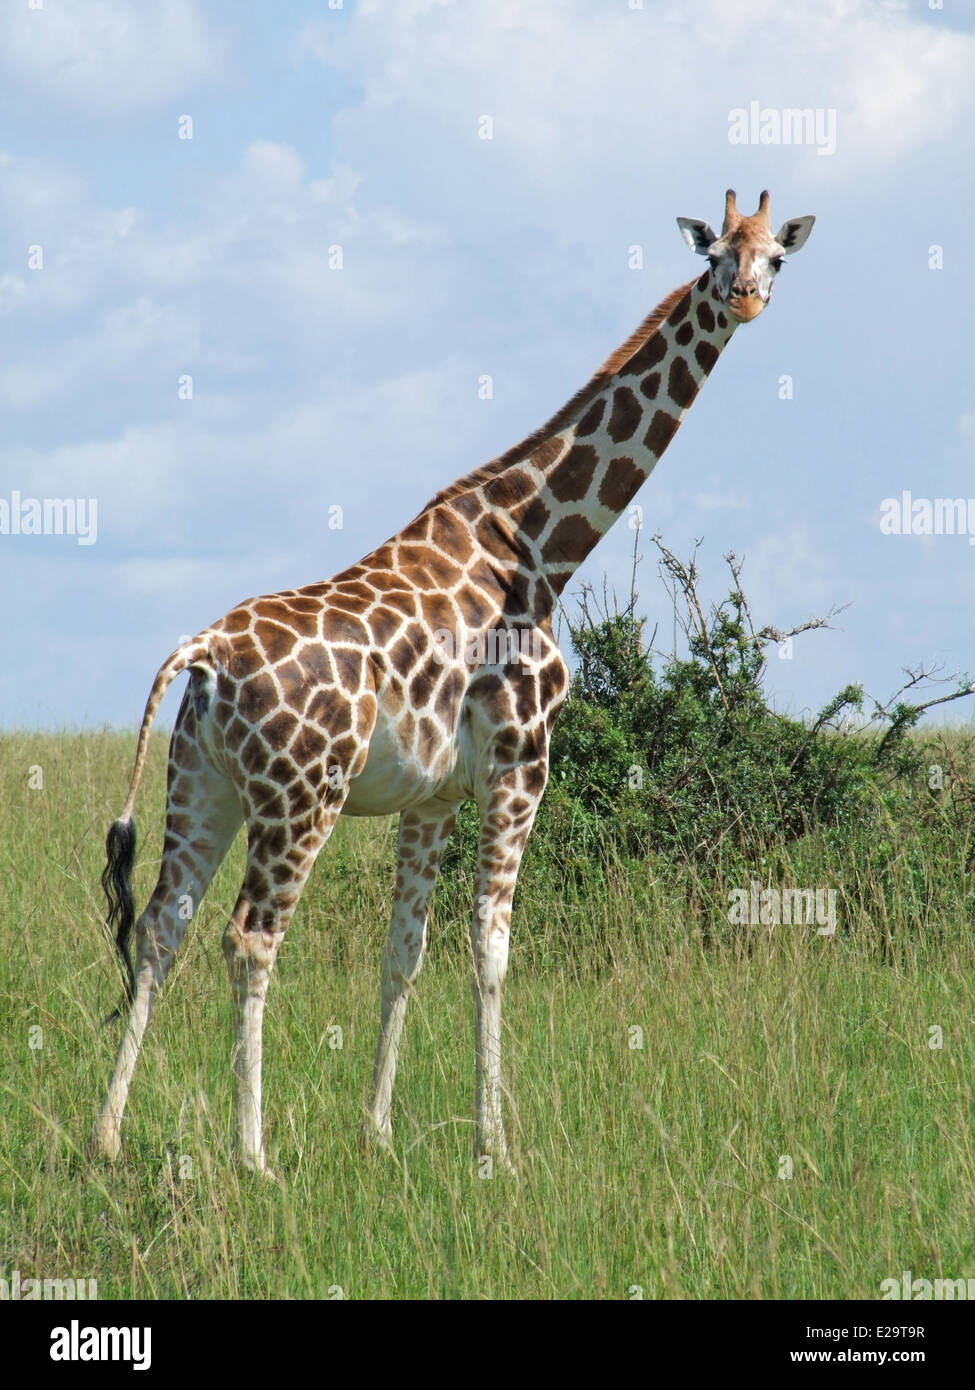 Une girafe Rothschild en Ouganda (Afrique) en se tenant debout dans la savane herbeuse Banque D'Images